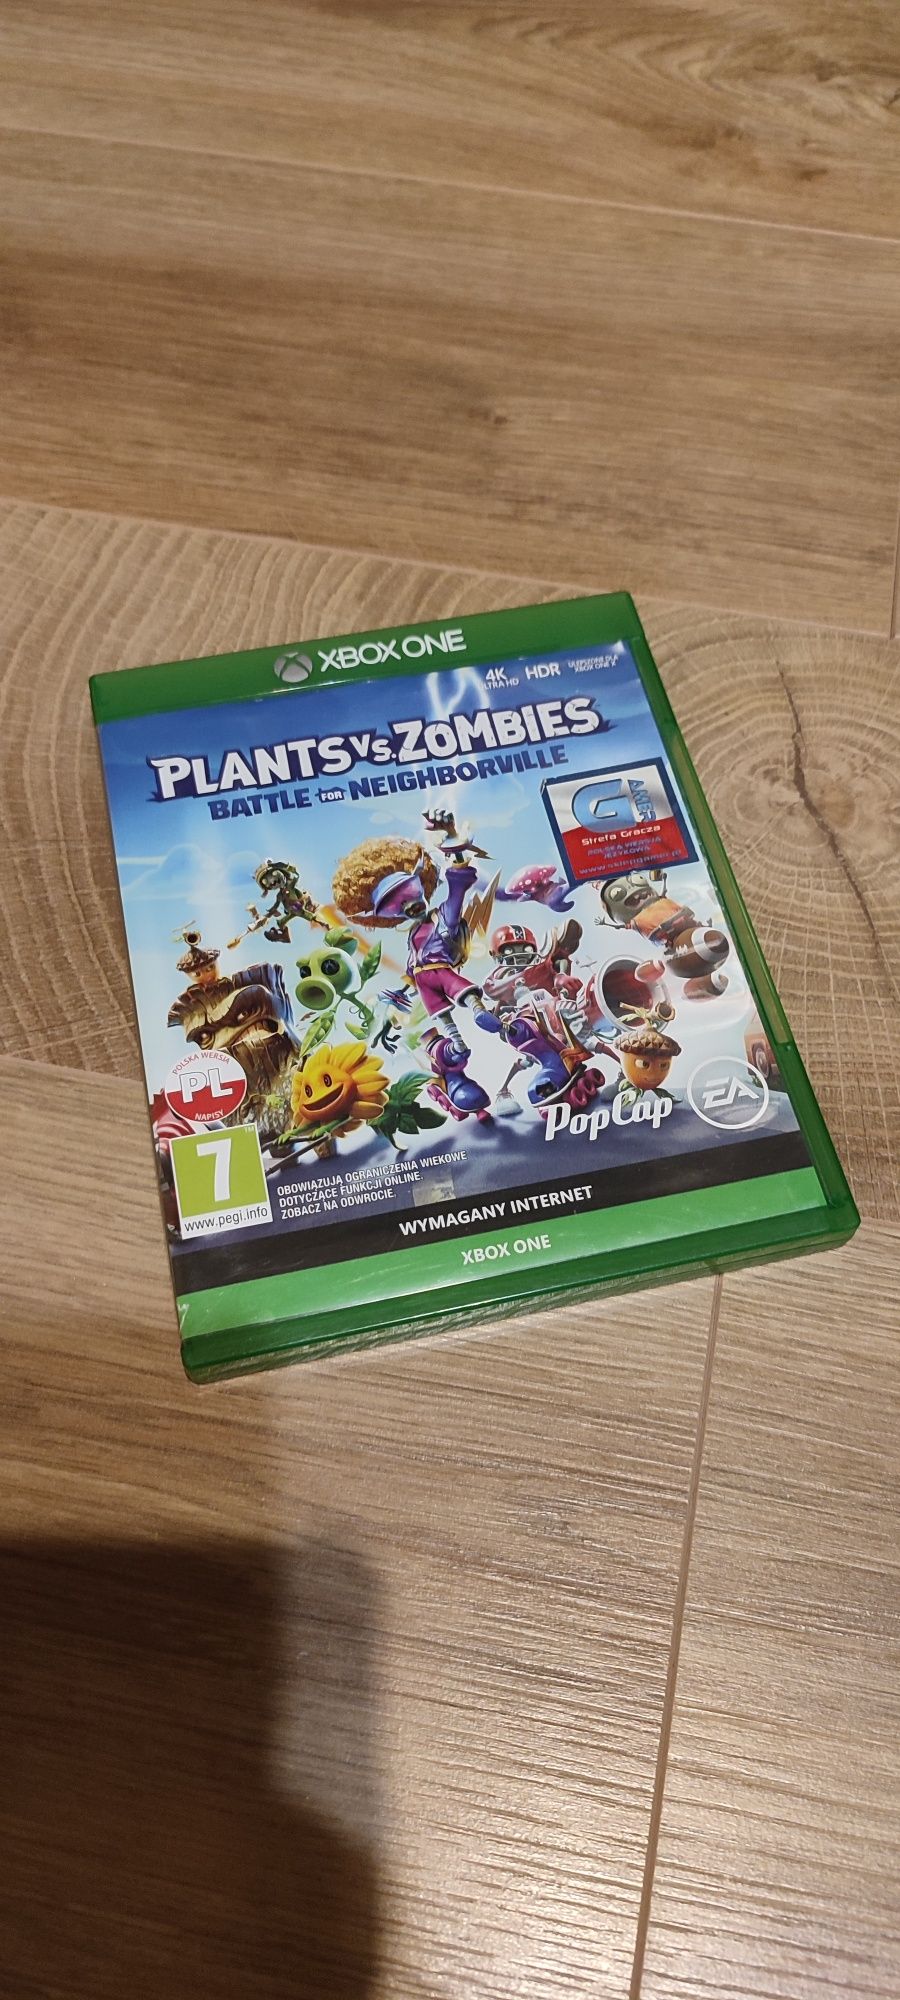 Plants vs zombies, xbox one